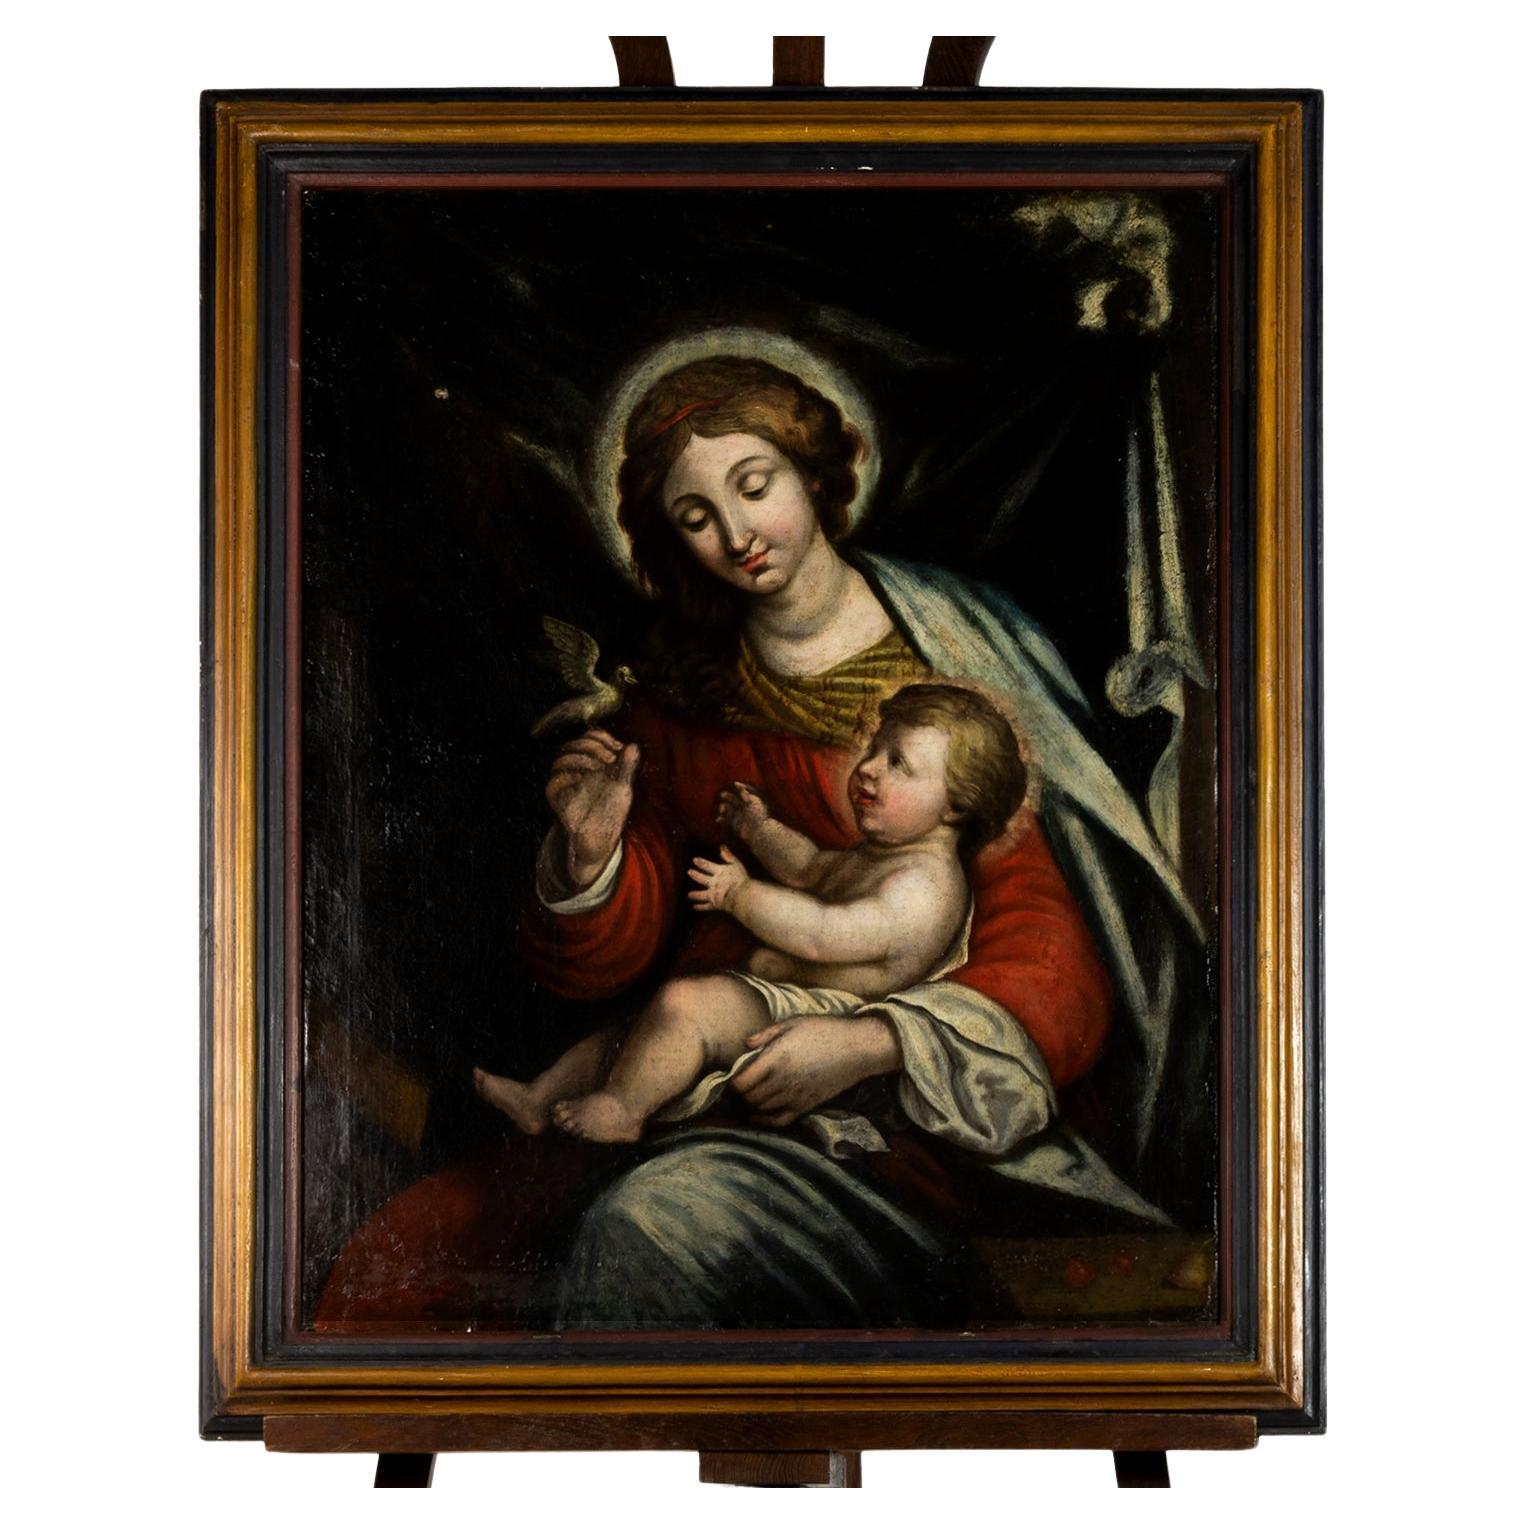 Peinture à l'huile de la Renaissance représentant Notre-Dame de la Paix, Marie avec Jésus-Christ, Prince de la Paix, à son bras sur un fond sombre, avec des robes rouges et vertes. La Mère est représentée.  tenant une colombe (symbole de paix) de la